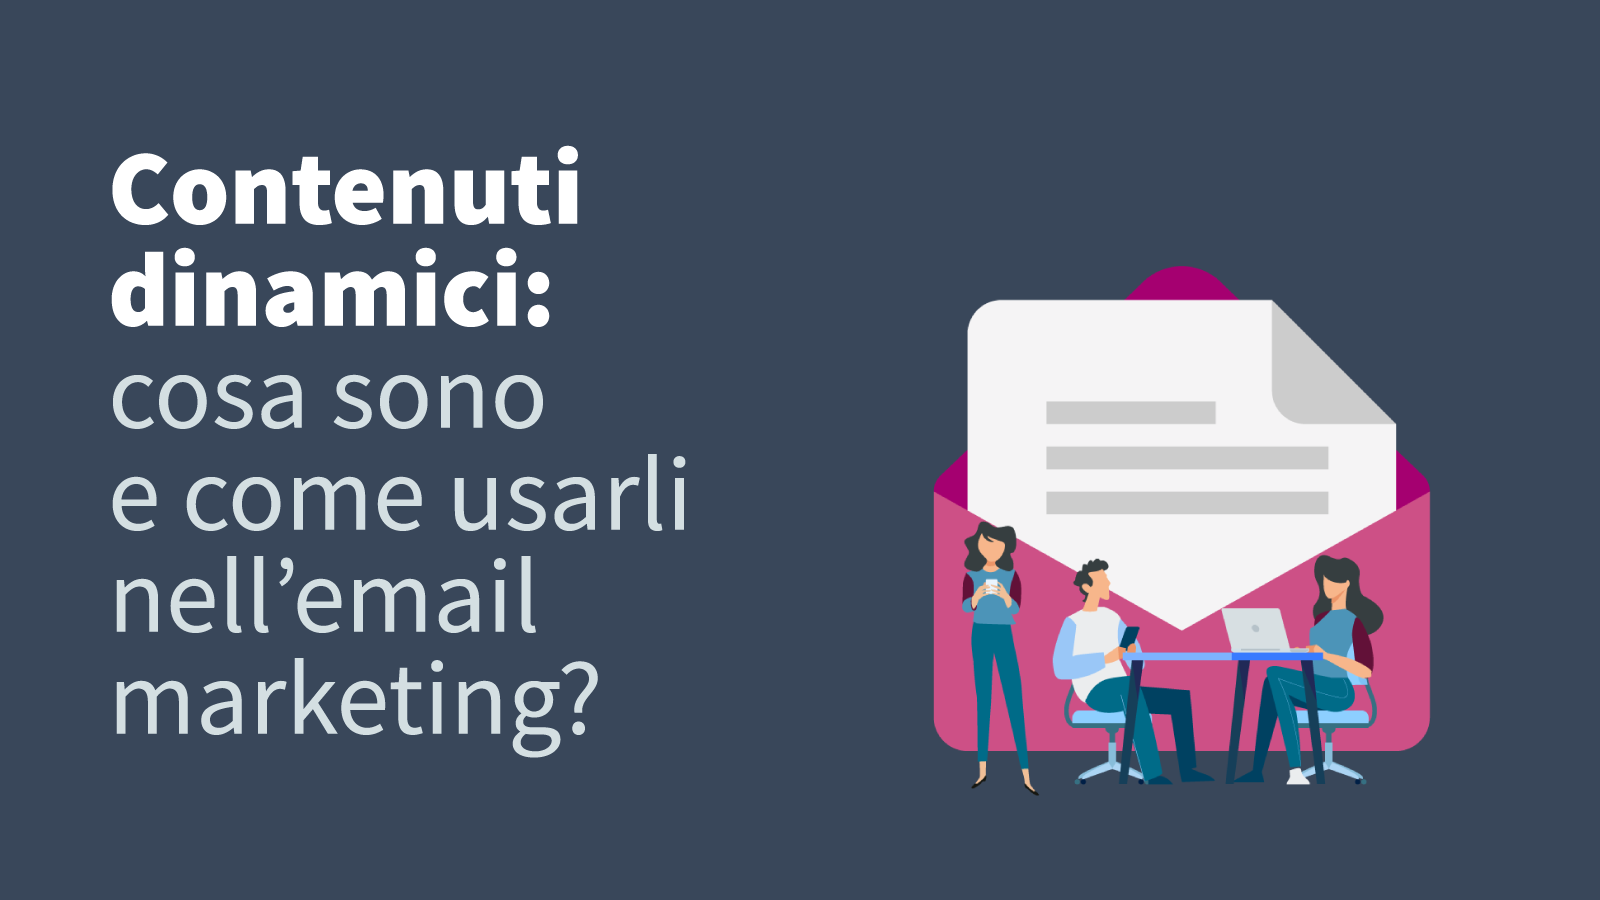 Contenuti dinamici: cosa sono e come usarli nell’email marketing?